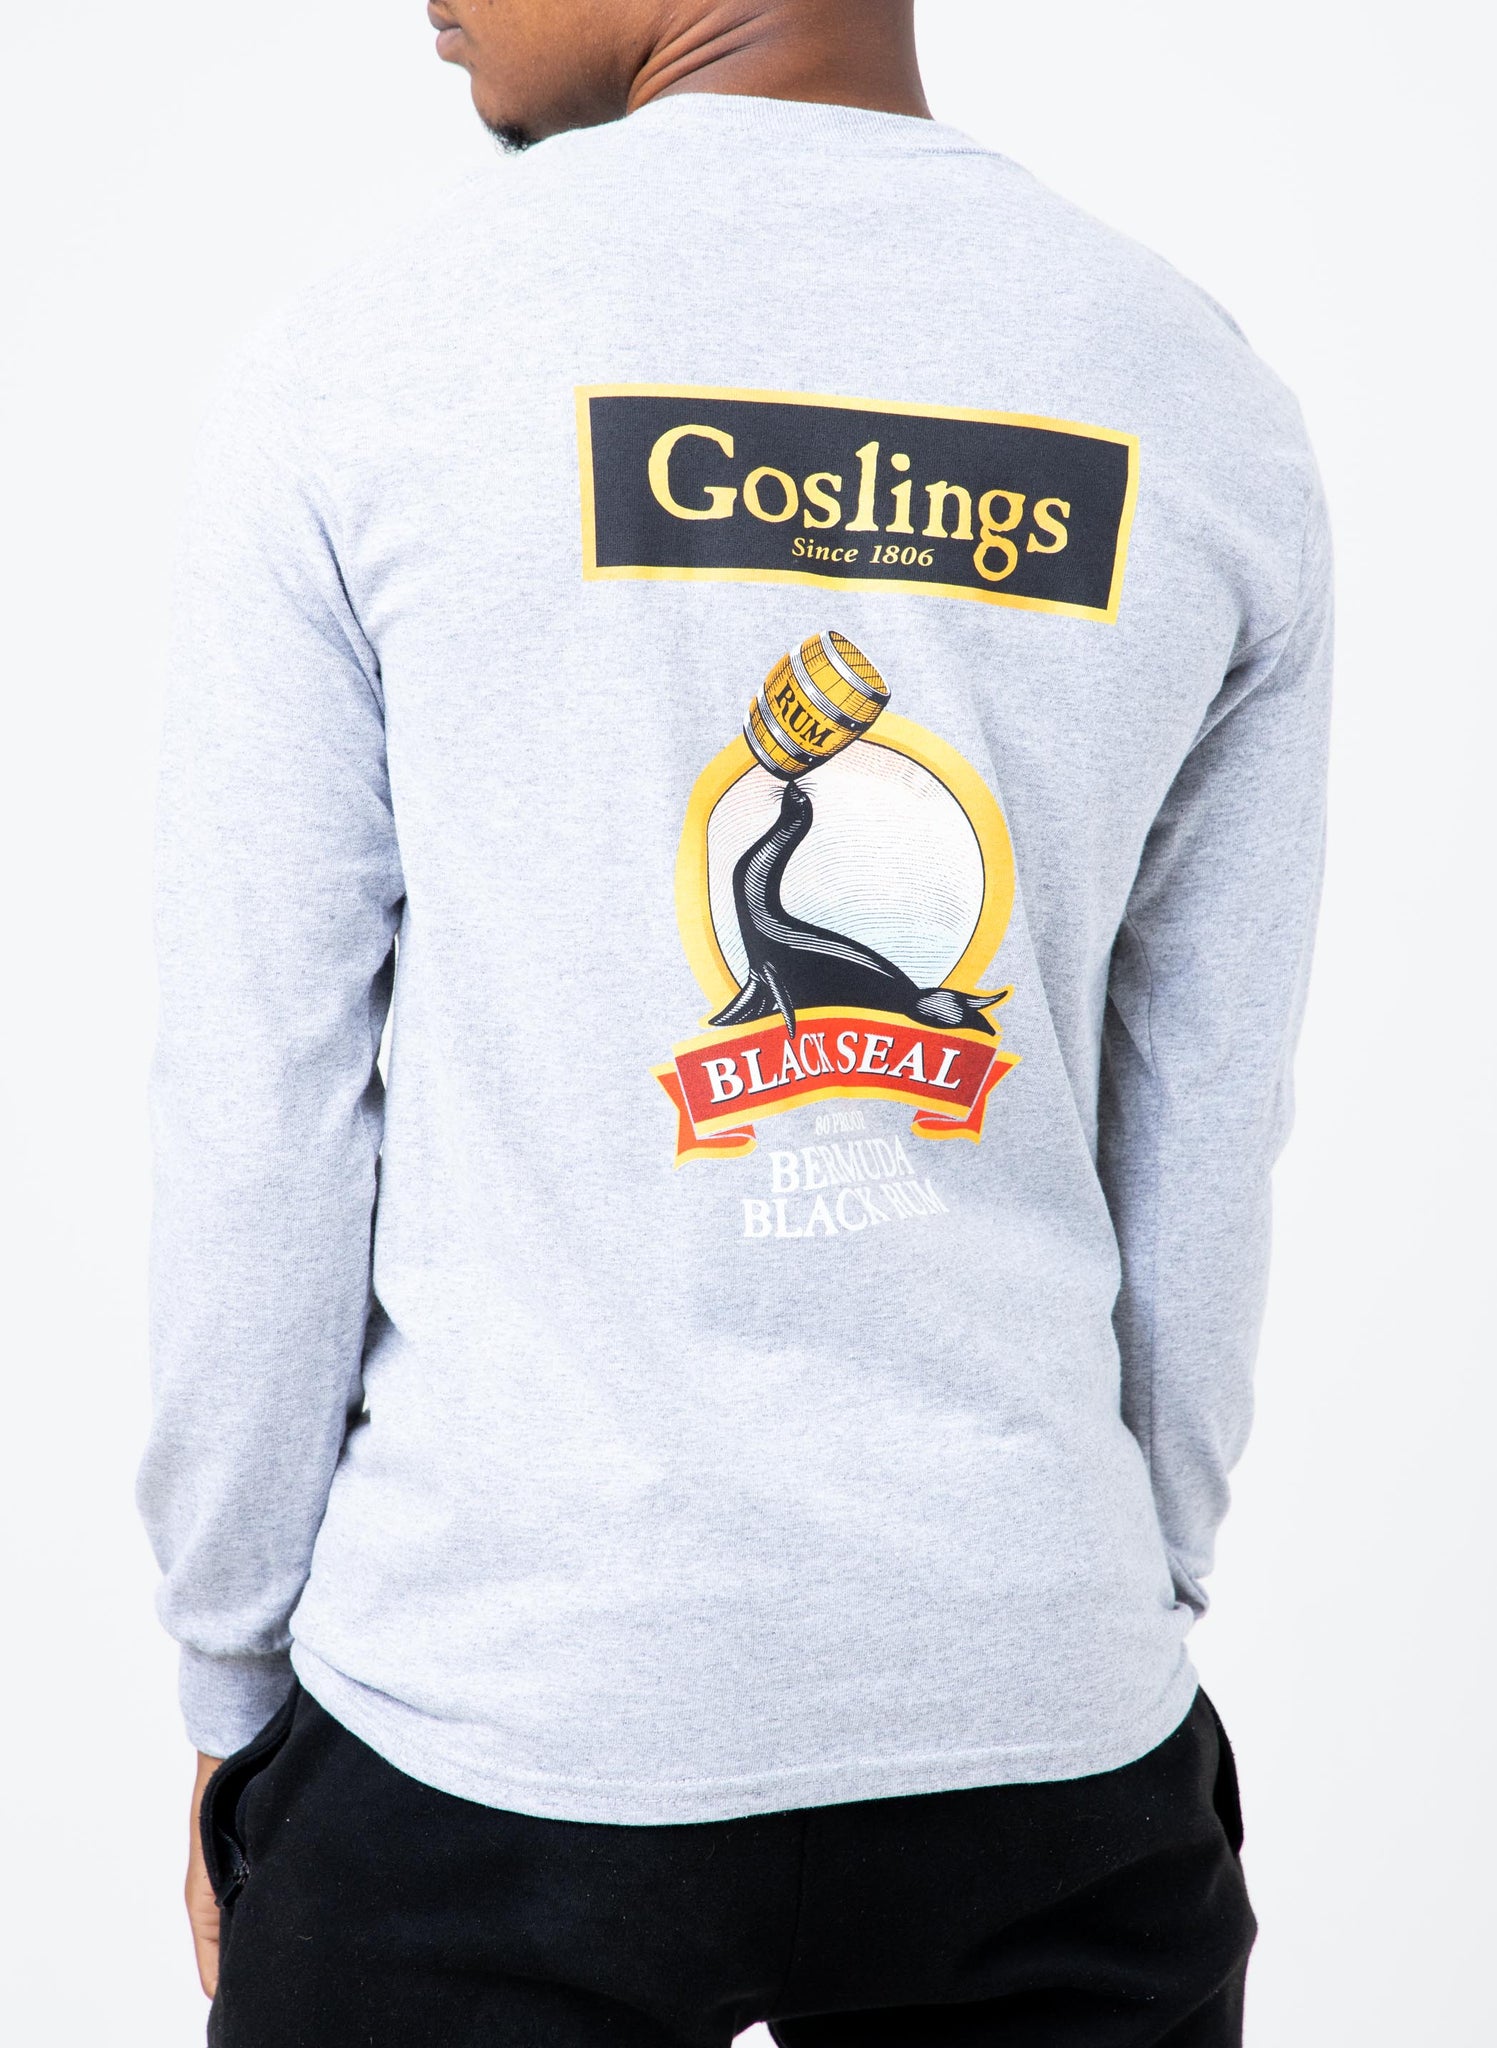 Goslings Black Seal Label Longsleeve